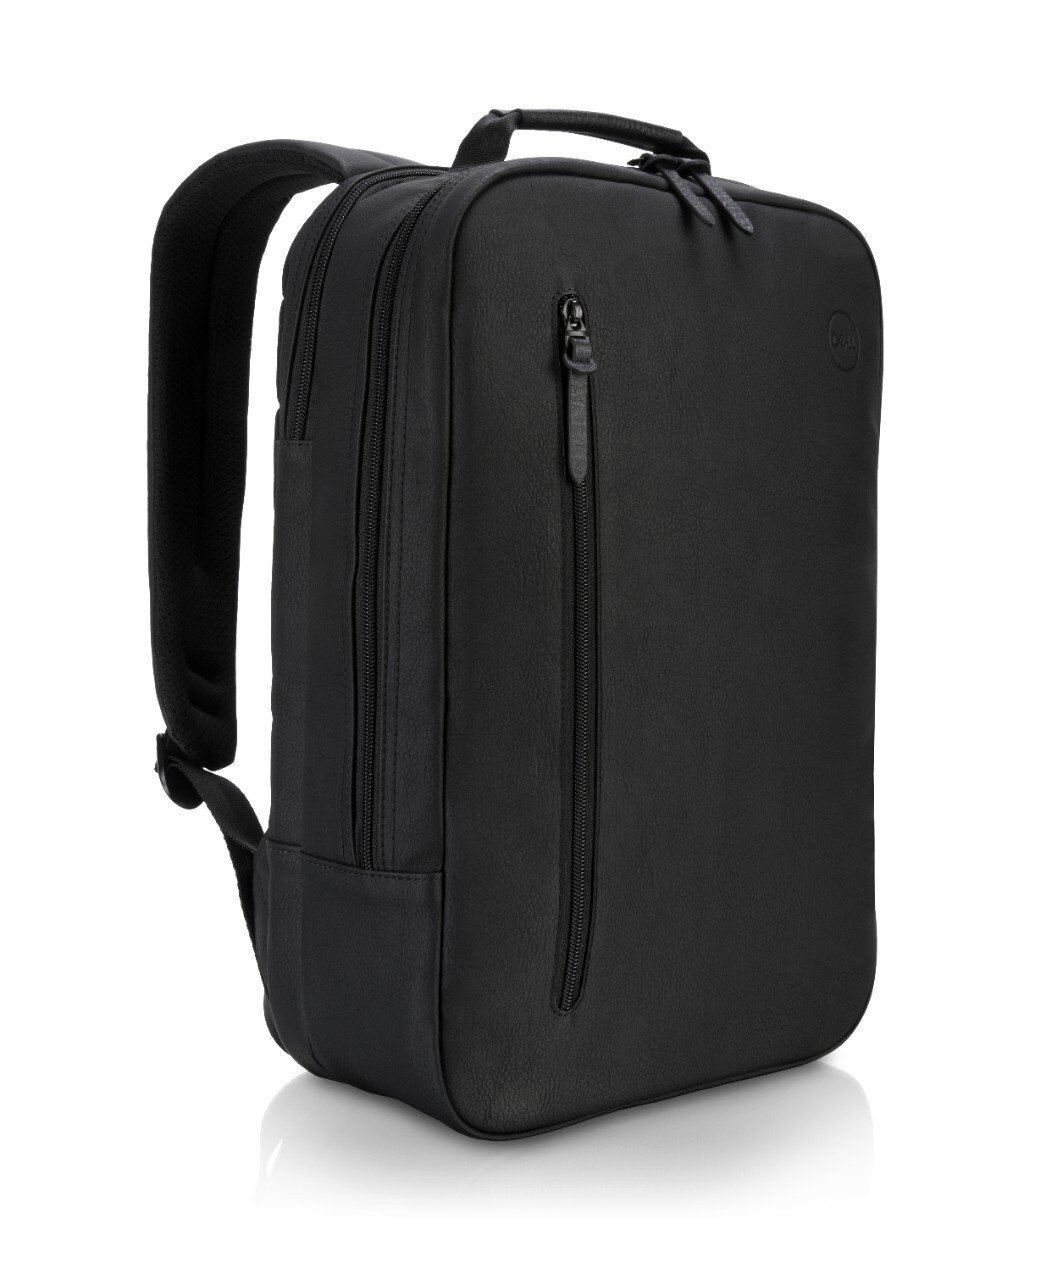 Buy Dell Premier Slim Backpack 14 online in Pakistan - Tejar.pk